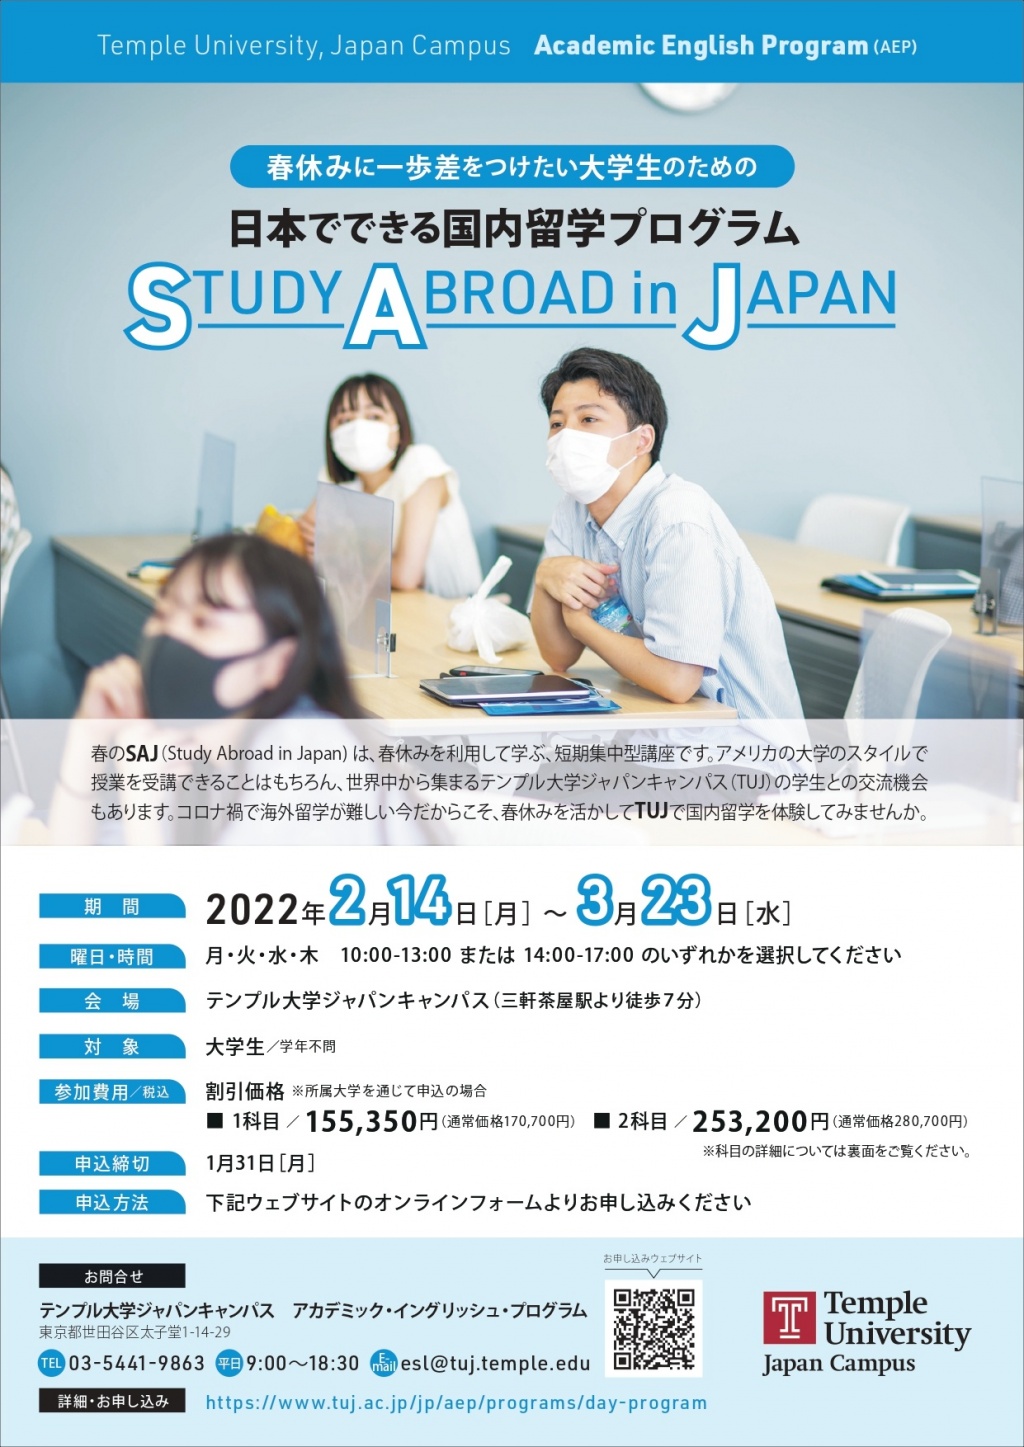 【最新版】2022年春学期AEP昼間講座 (日本でできる国内留学プログラム) P1